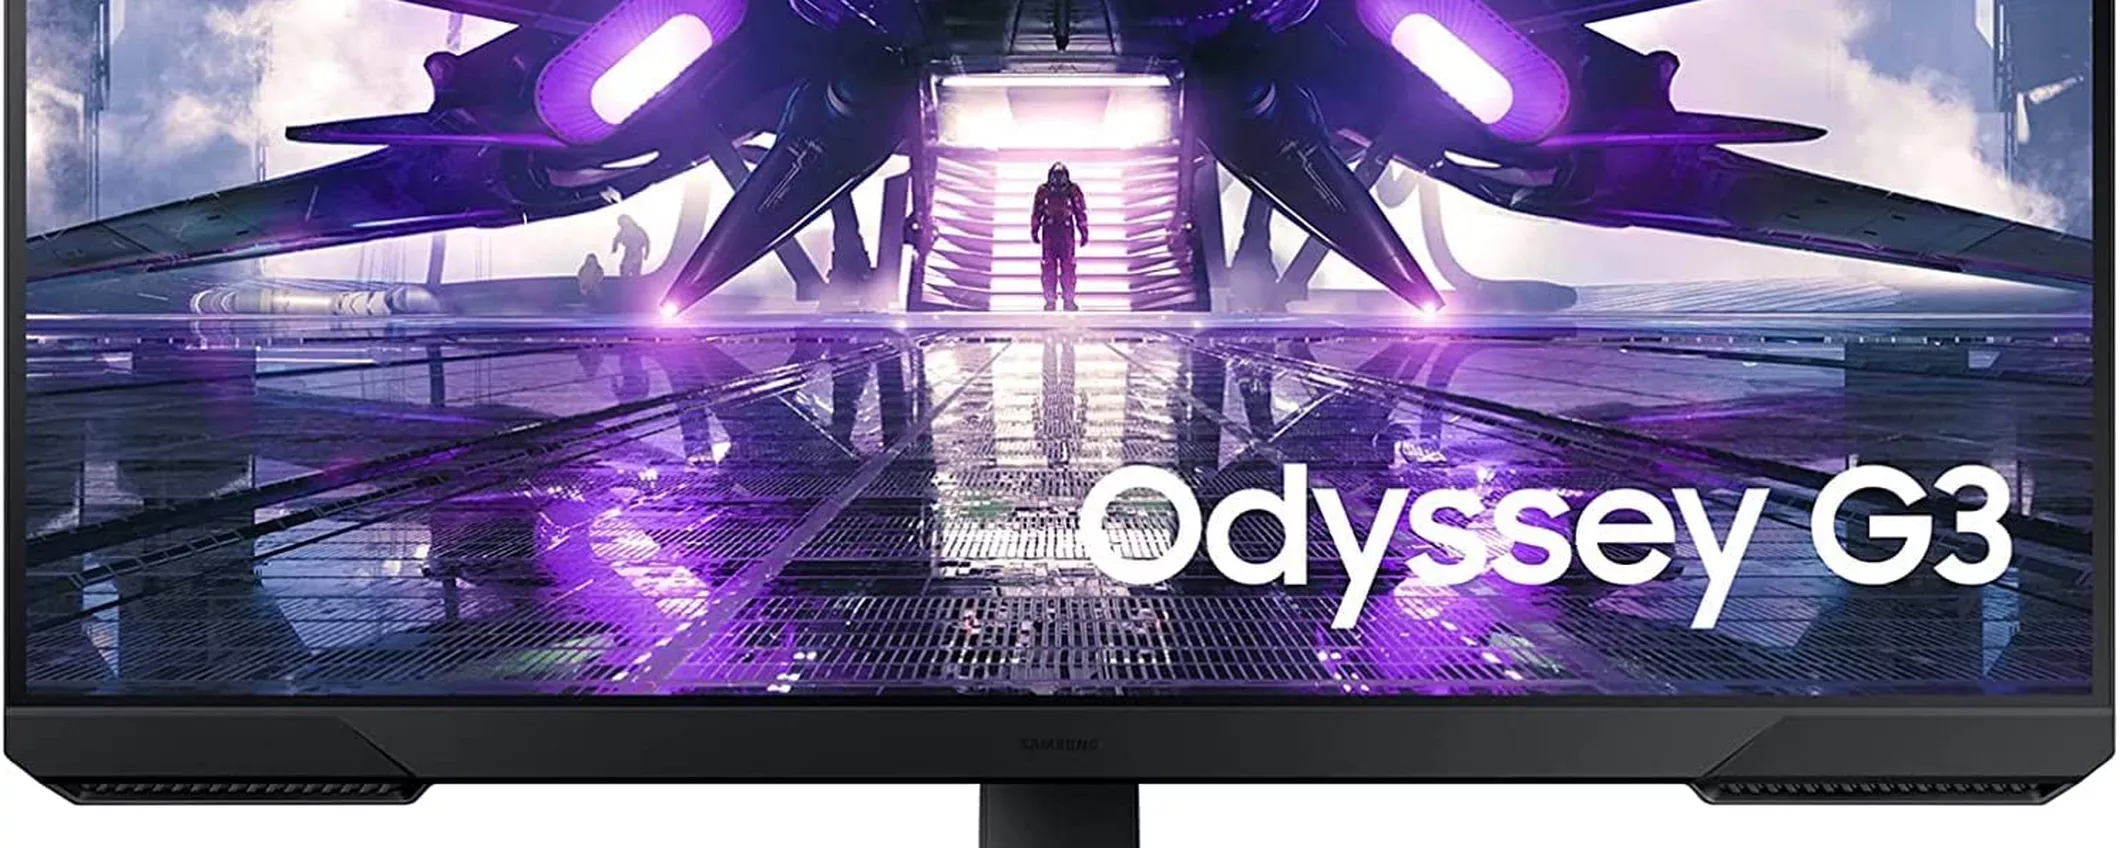 Monitor Samsung Odyssey G3 per Gaming ad un prezzo scontatissimo su Amazon